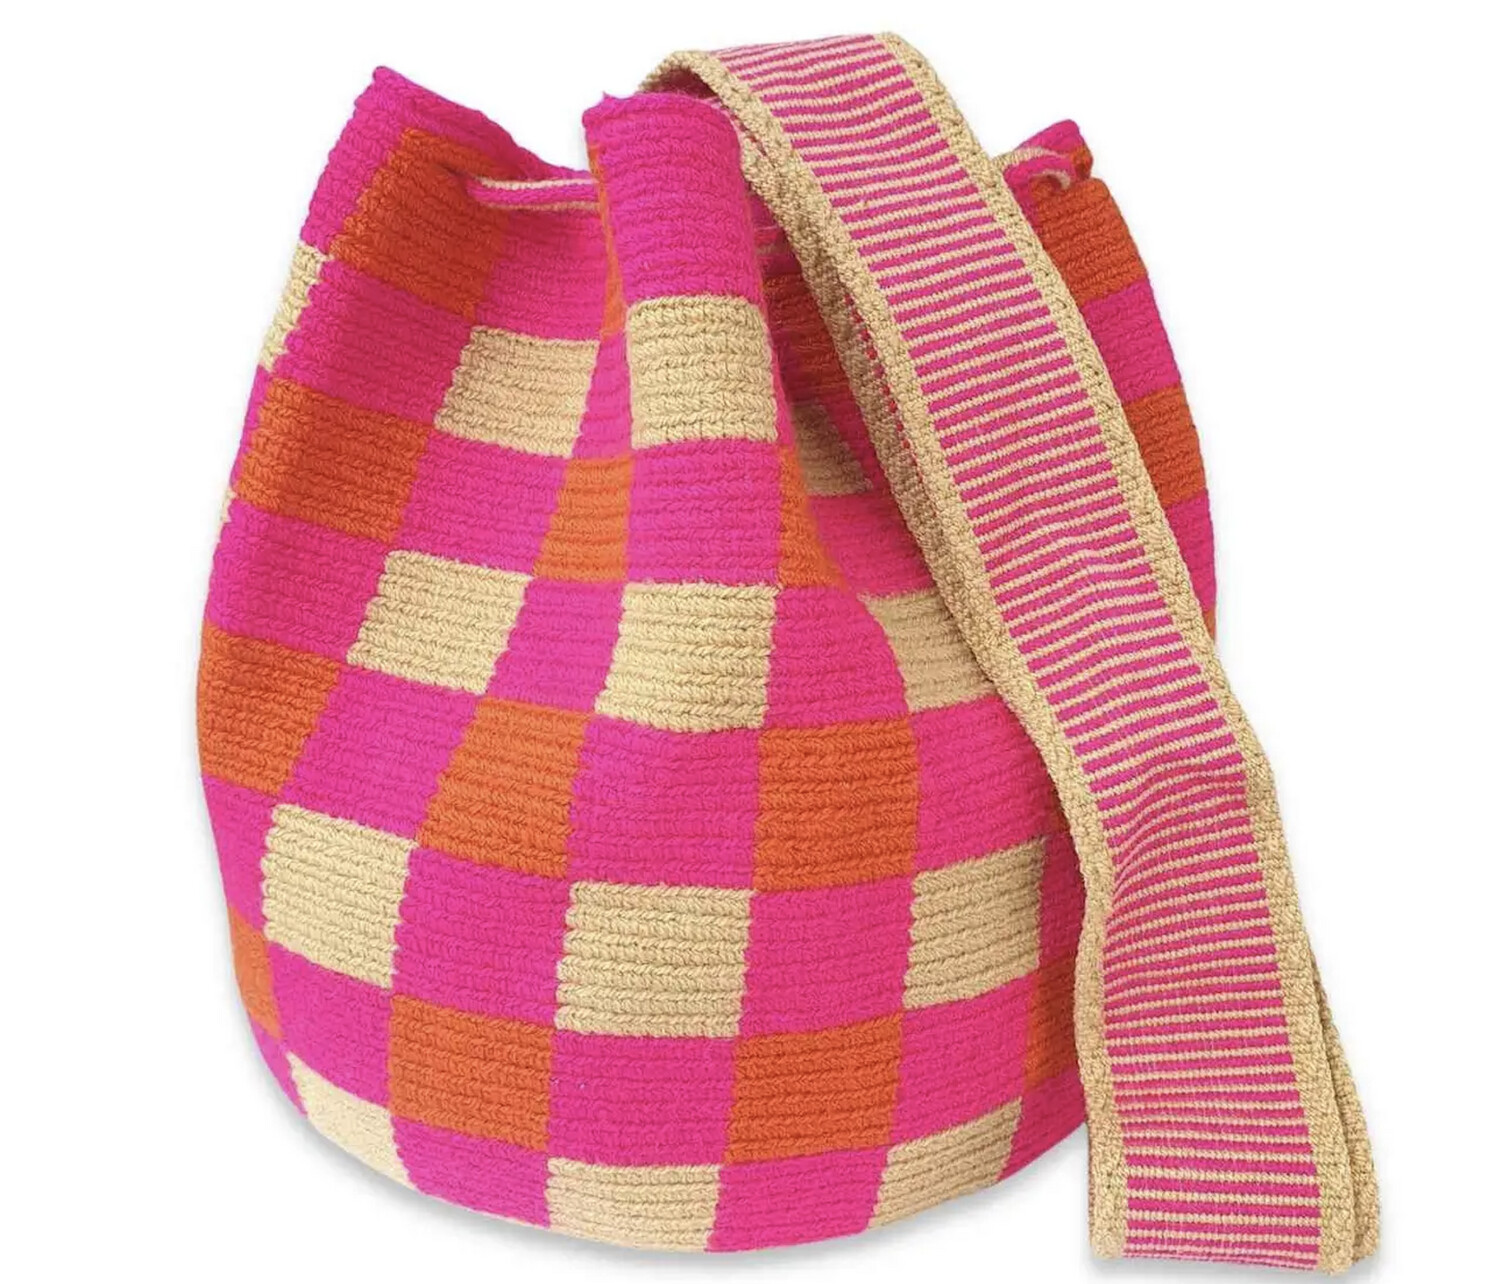 Manuel Antonio Hand Crochet Bucket Bag